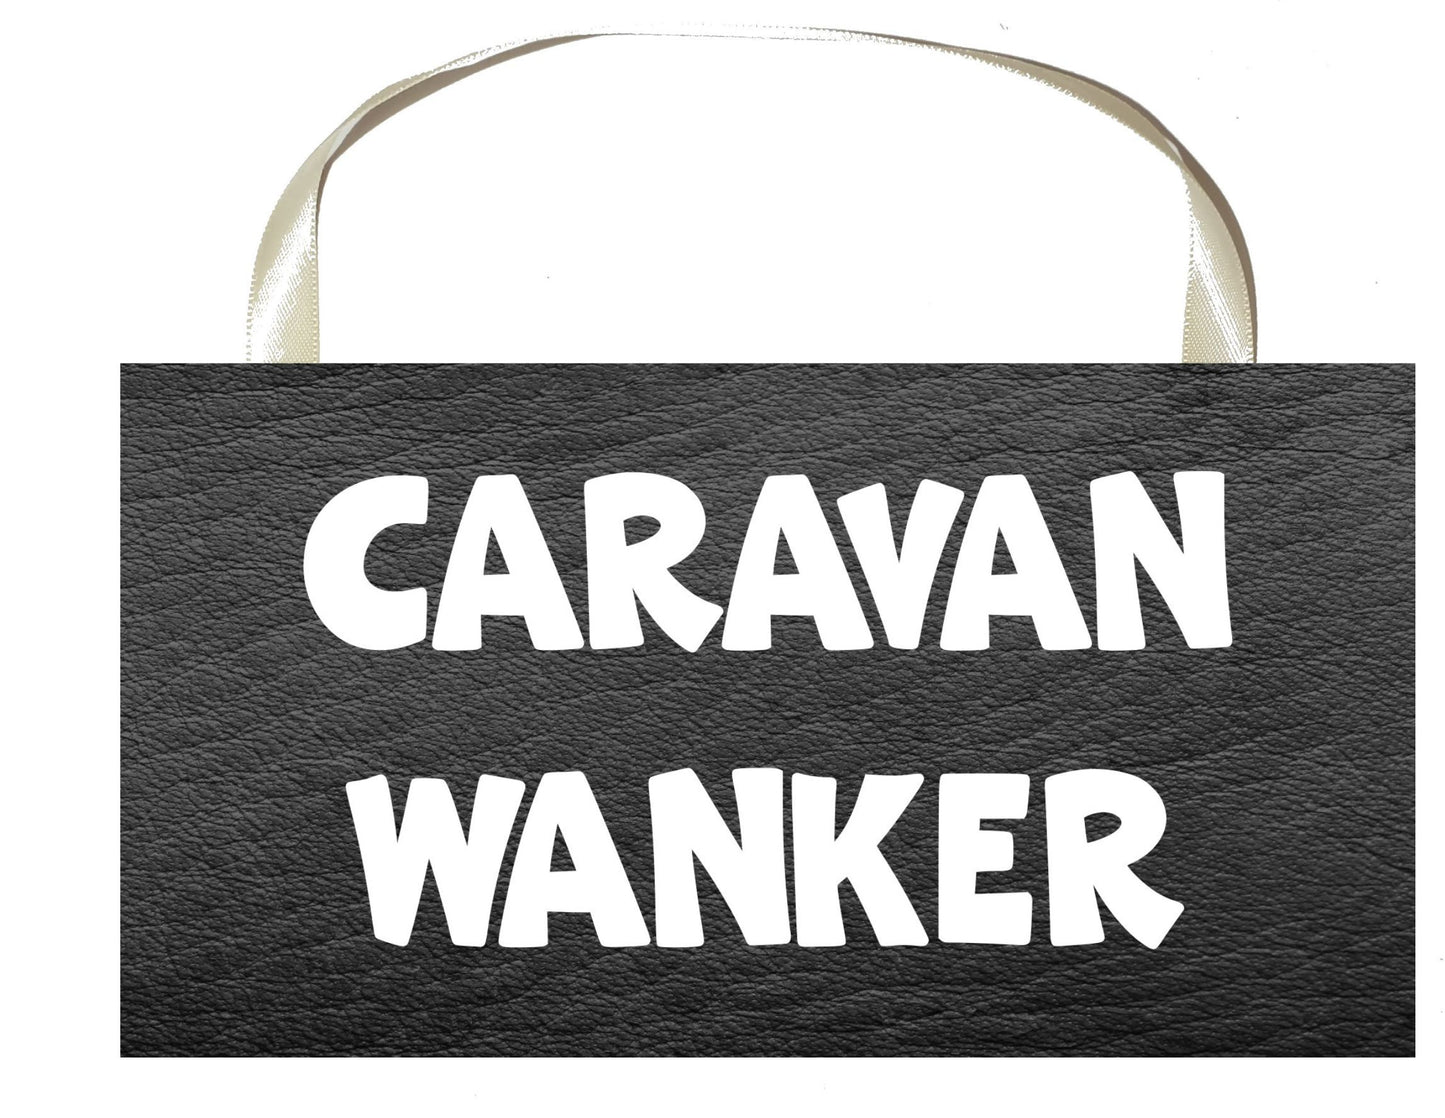 Caravan Plaque / Sign Gift - Caravan Wanker - Rude Cheeky Cute Fun Novelty Present